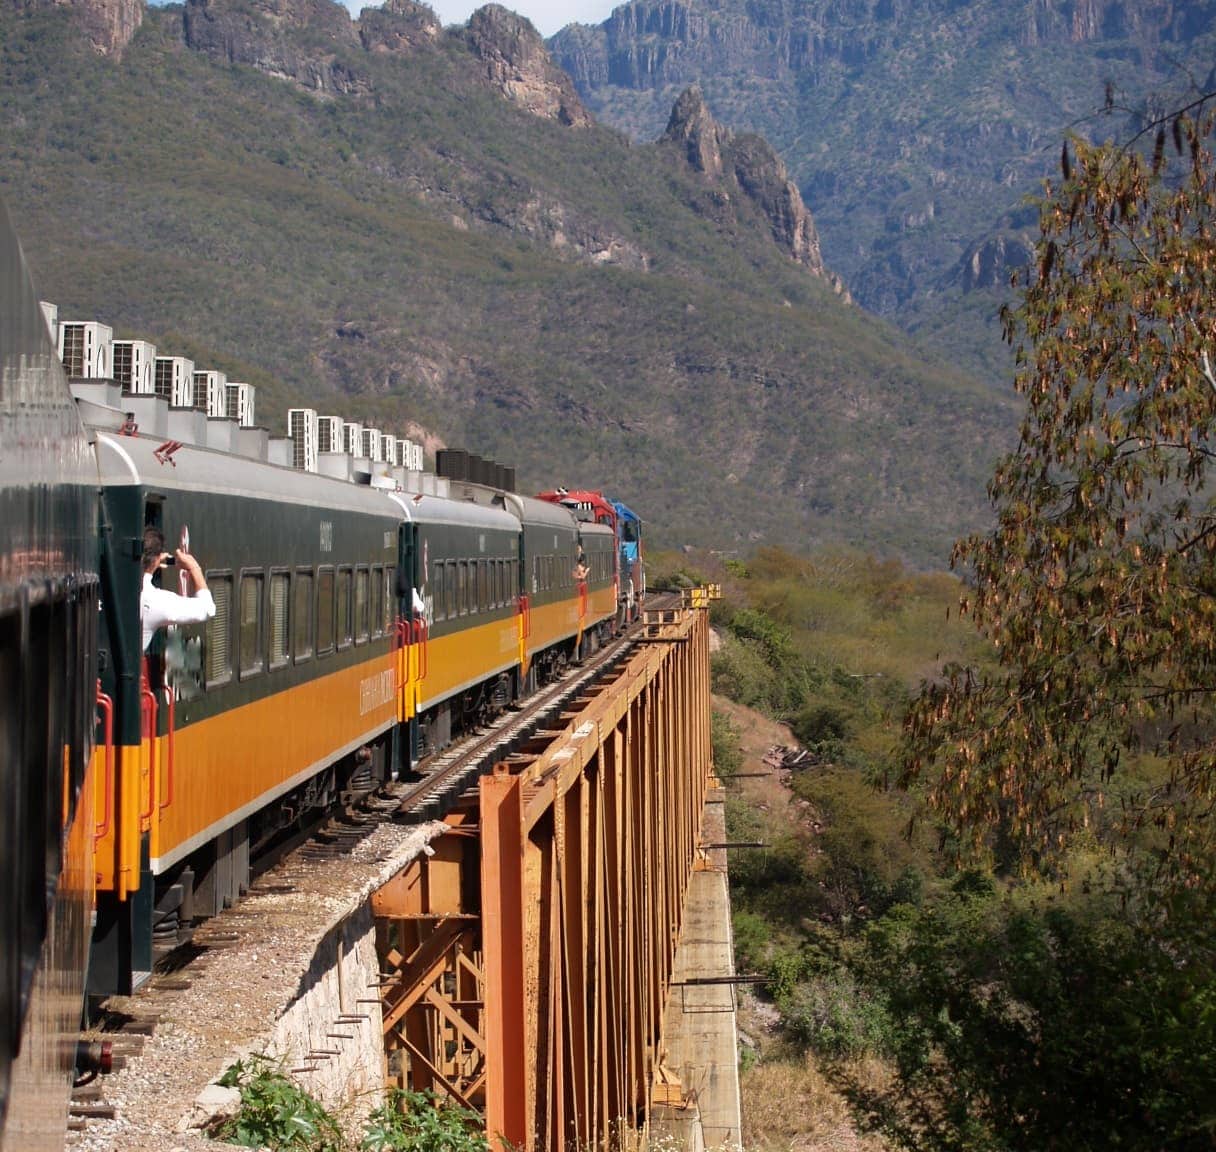 Tren Chepe en Barrancas de Cobre, Chihuahua